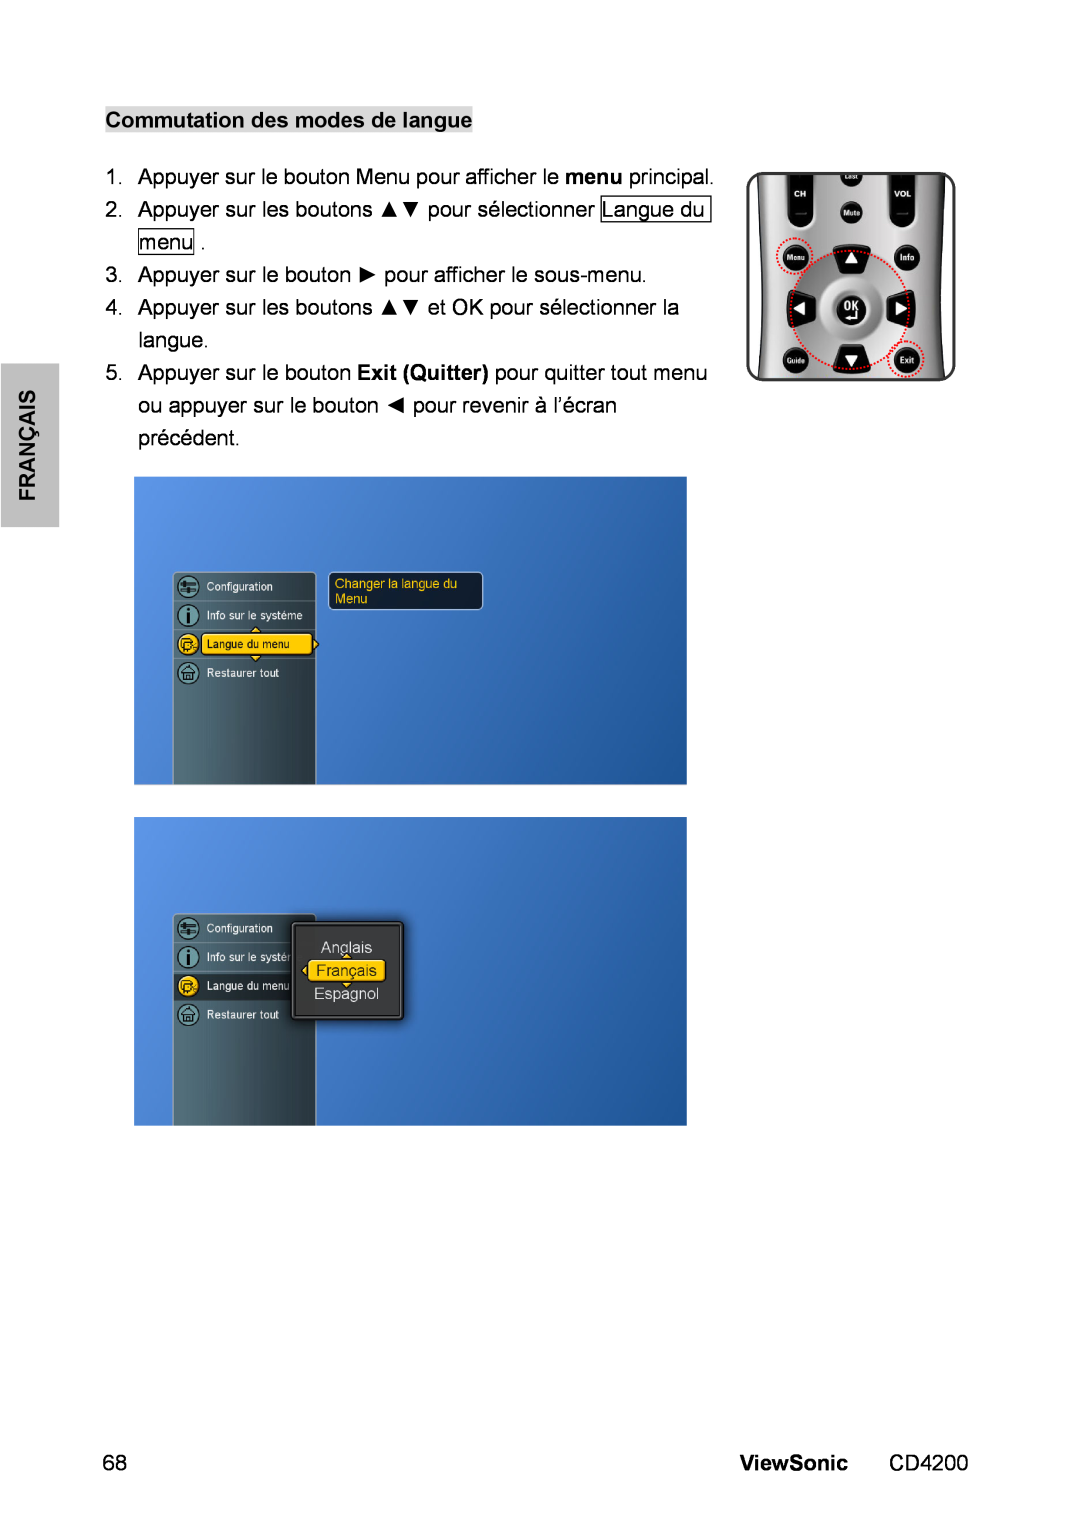 ViewSonic CD4200 manual Commutation des modes de langue, Français, ViewSonic 